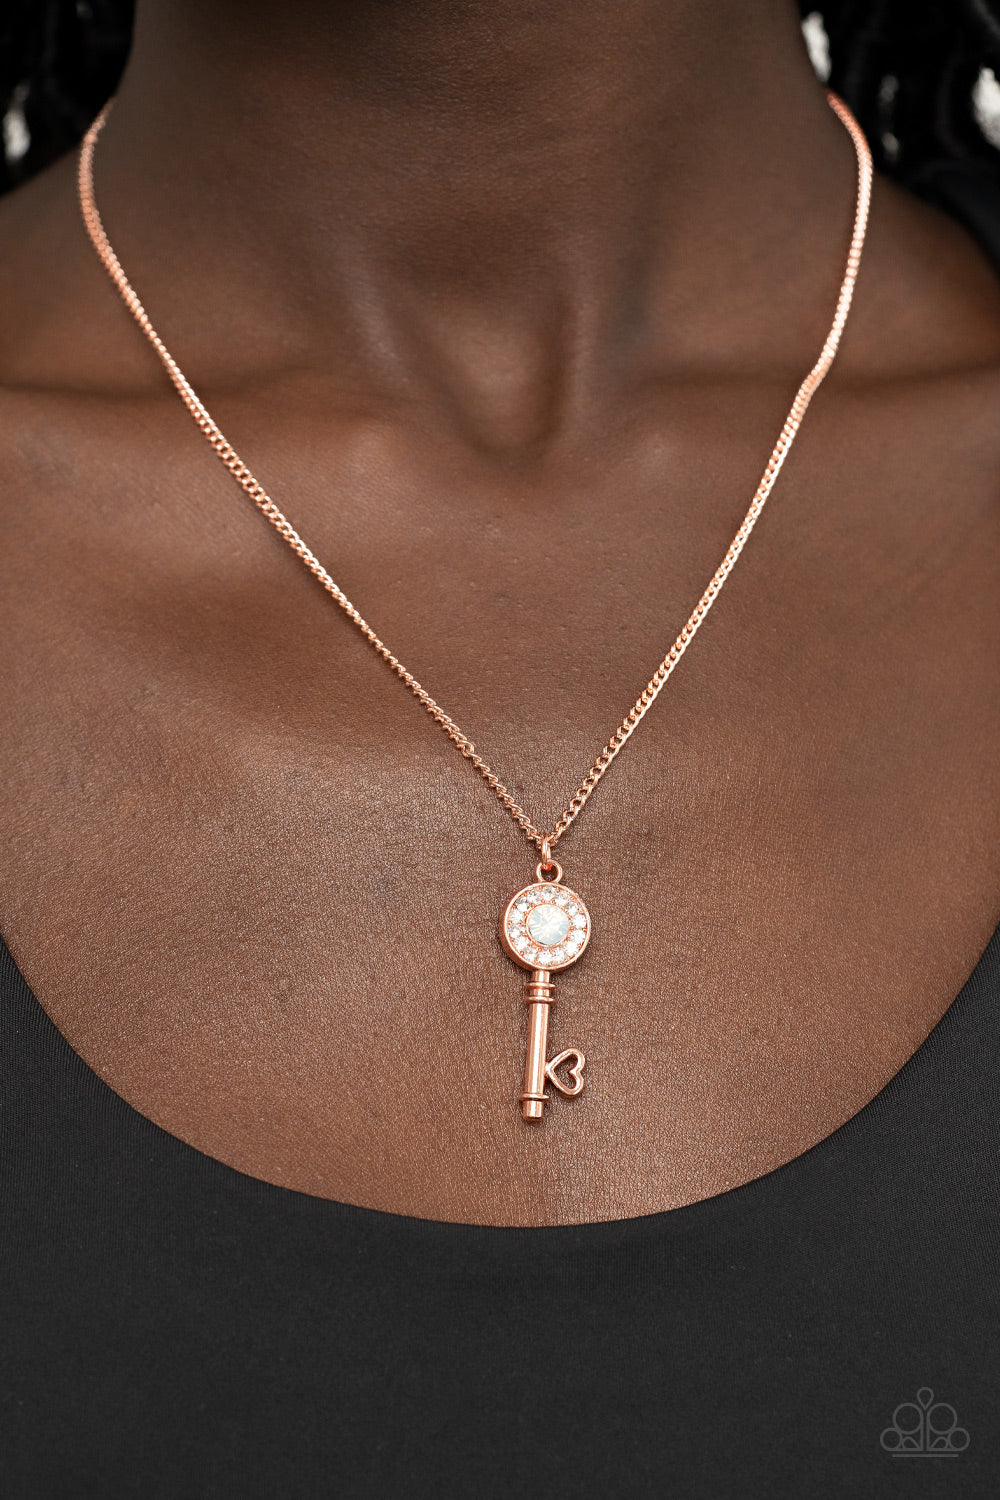 Prized Key Player - Copper key necklace Paparazzi PRE ORDER - $5 Jewelry with Ashley Swint